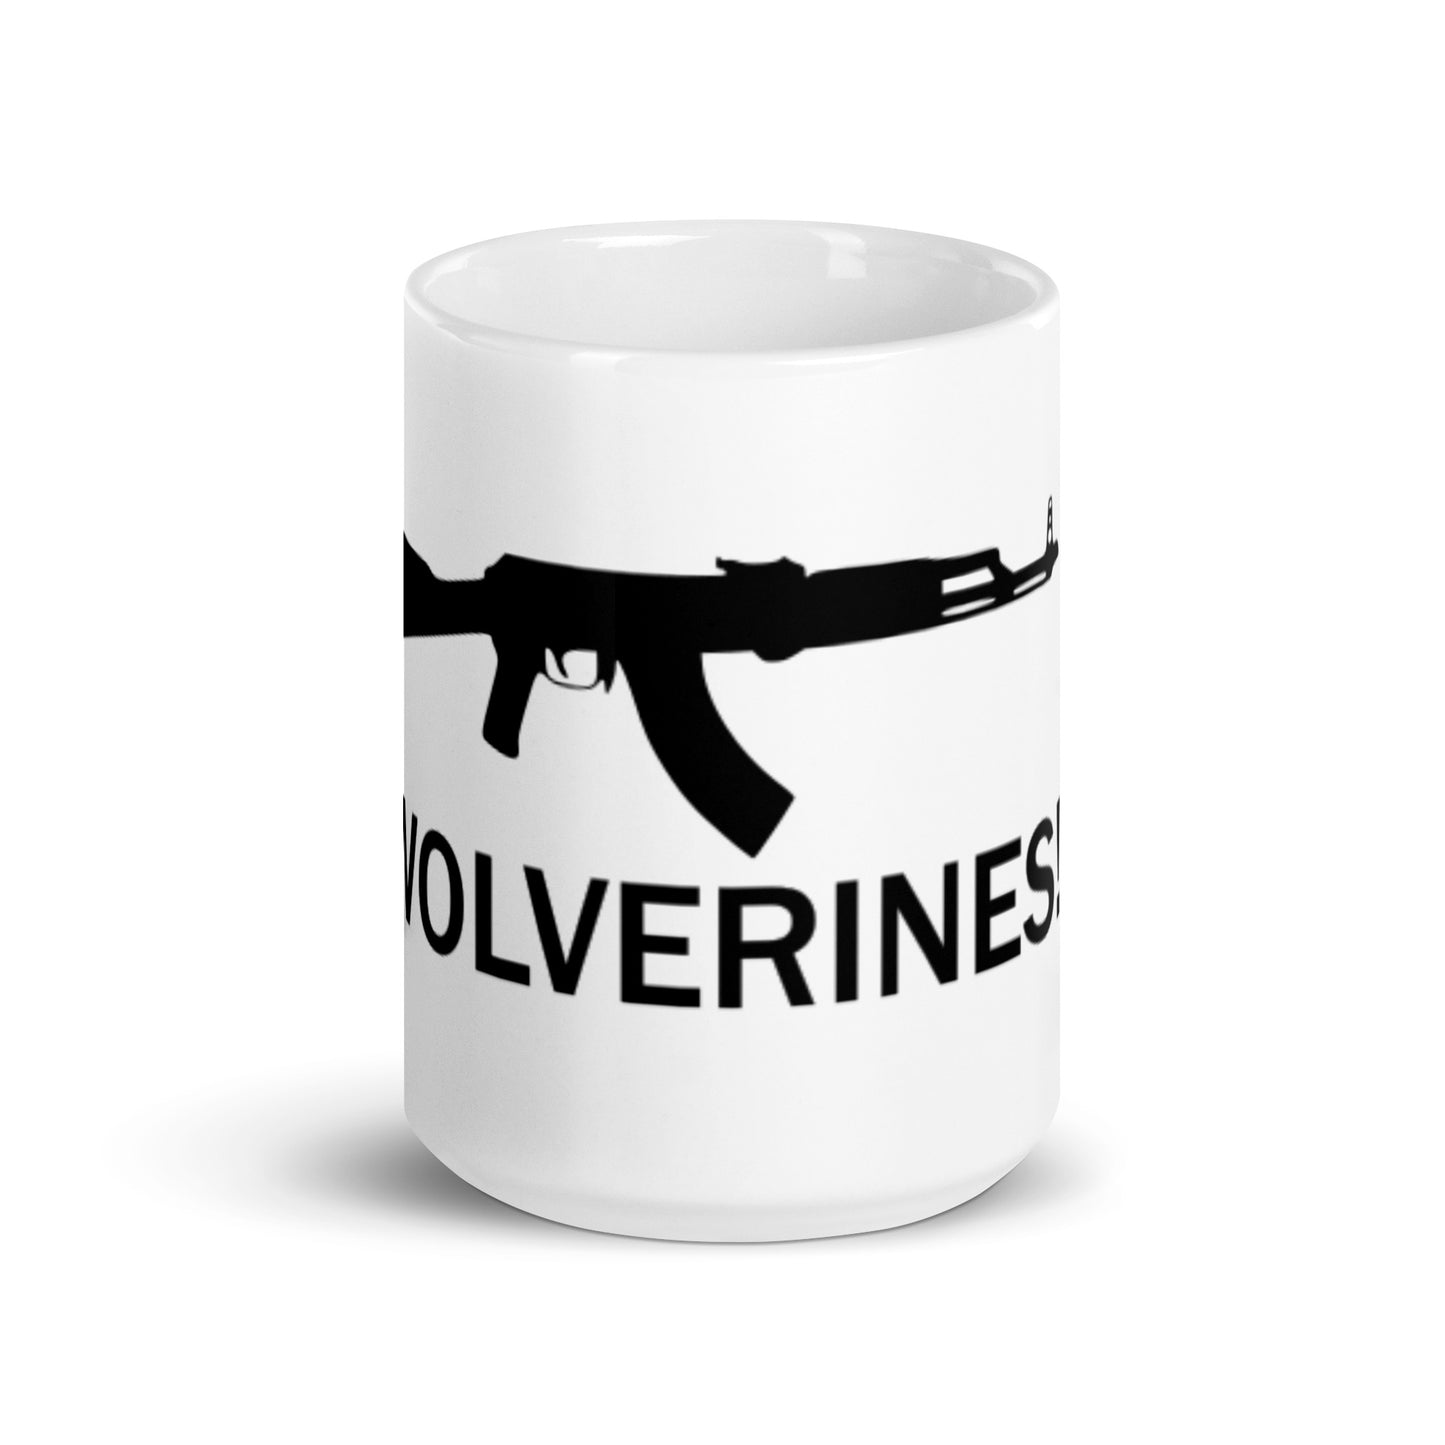 Wolverines! Mug